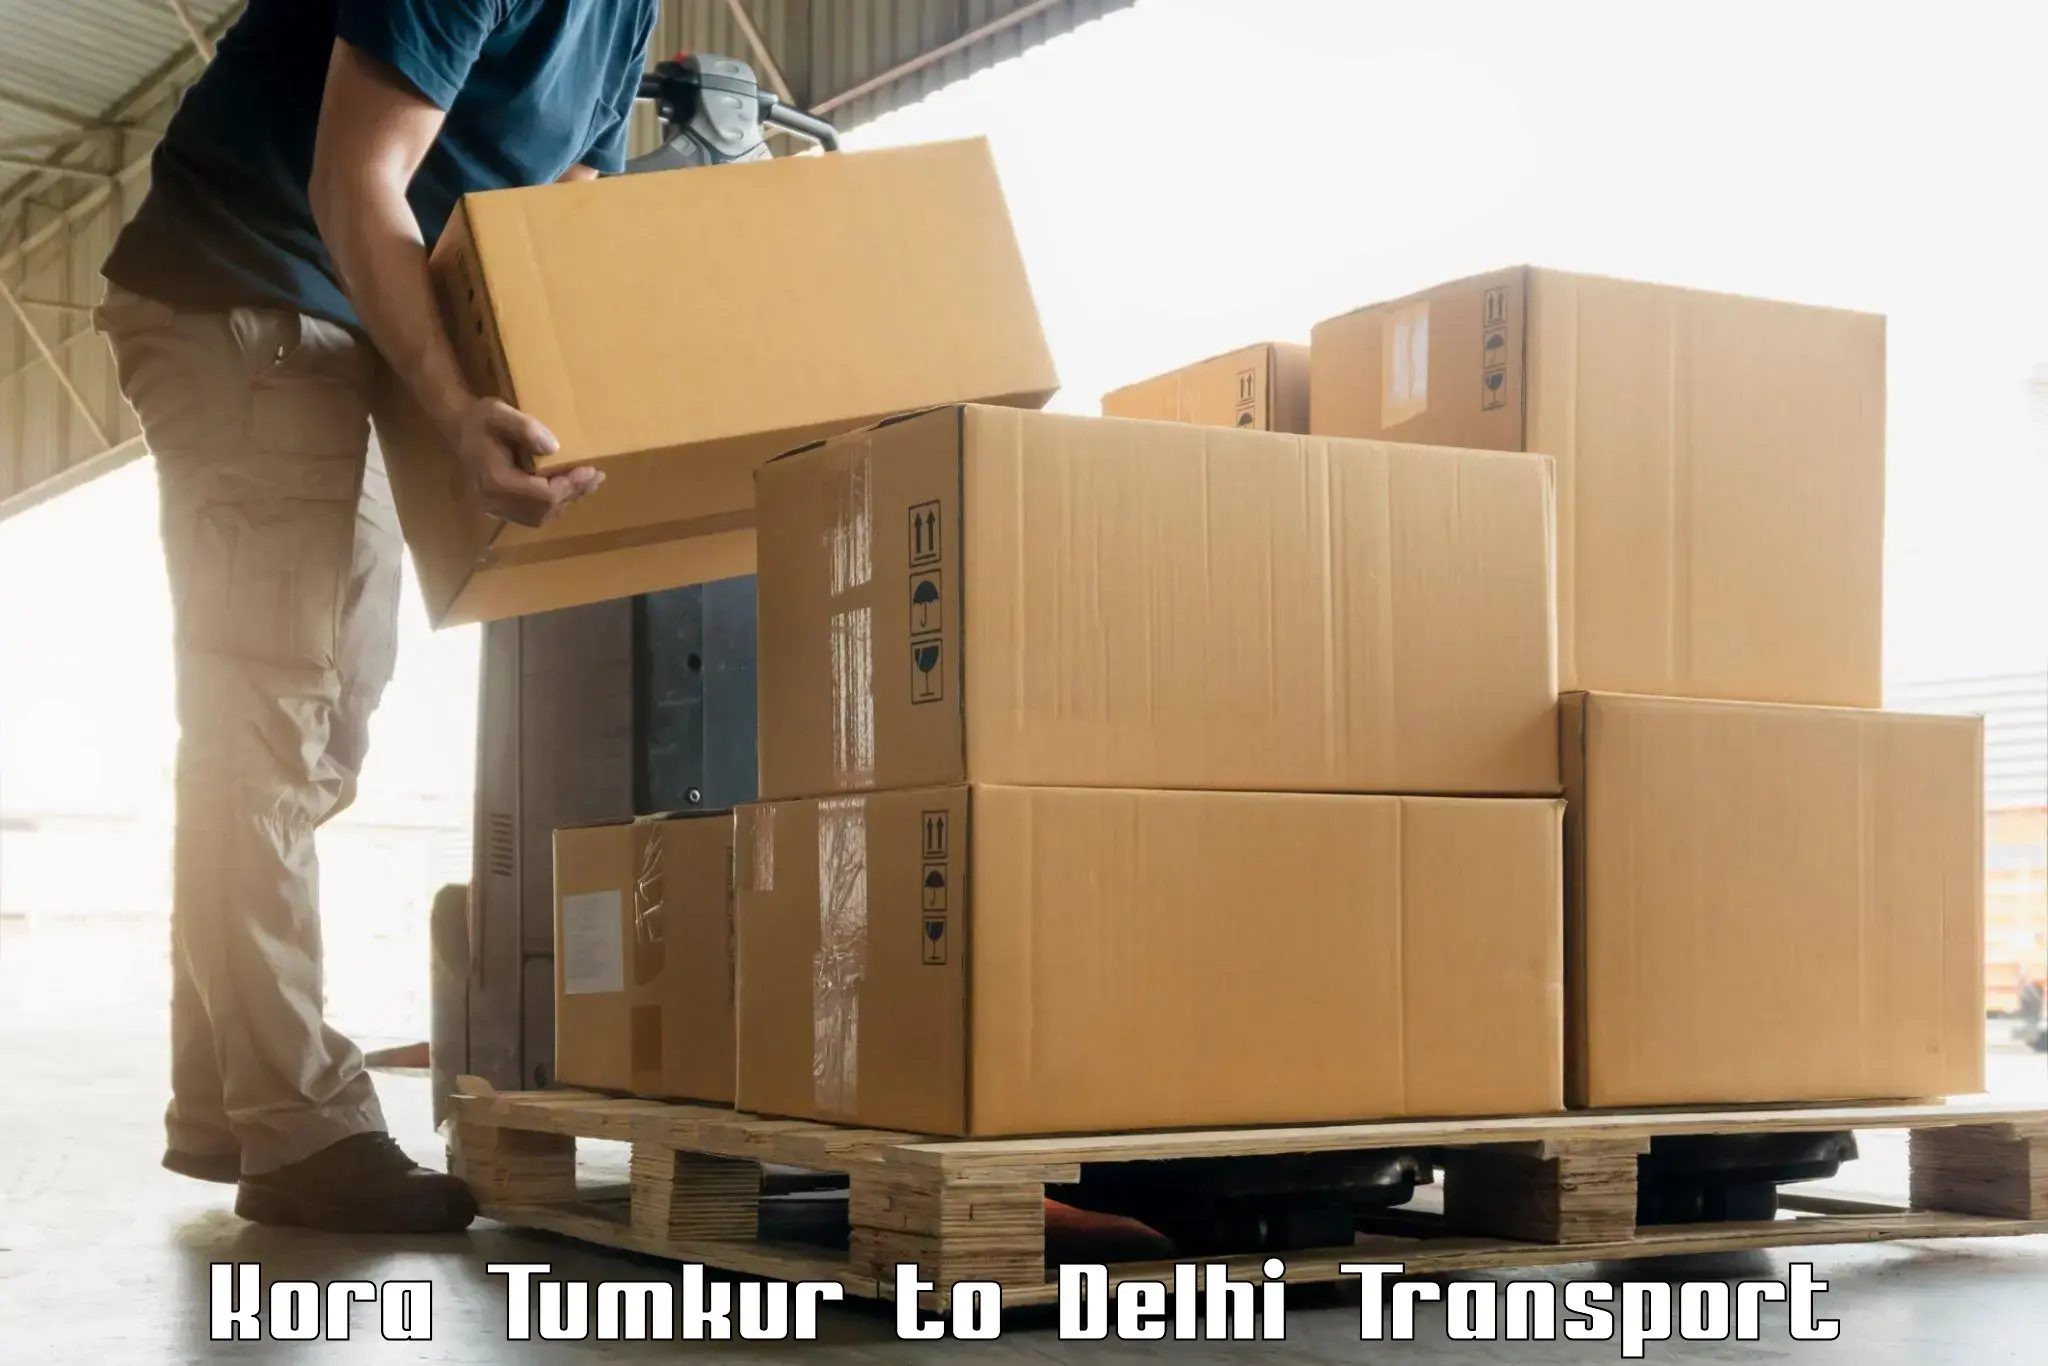 Furniture transport service Kora Tumkur to Subhash Nagar